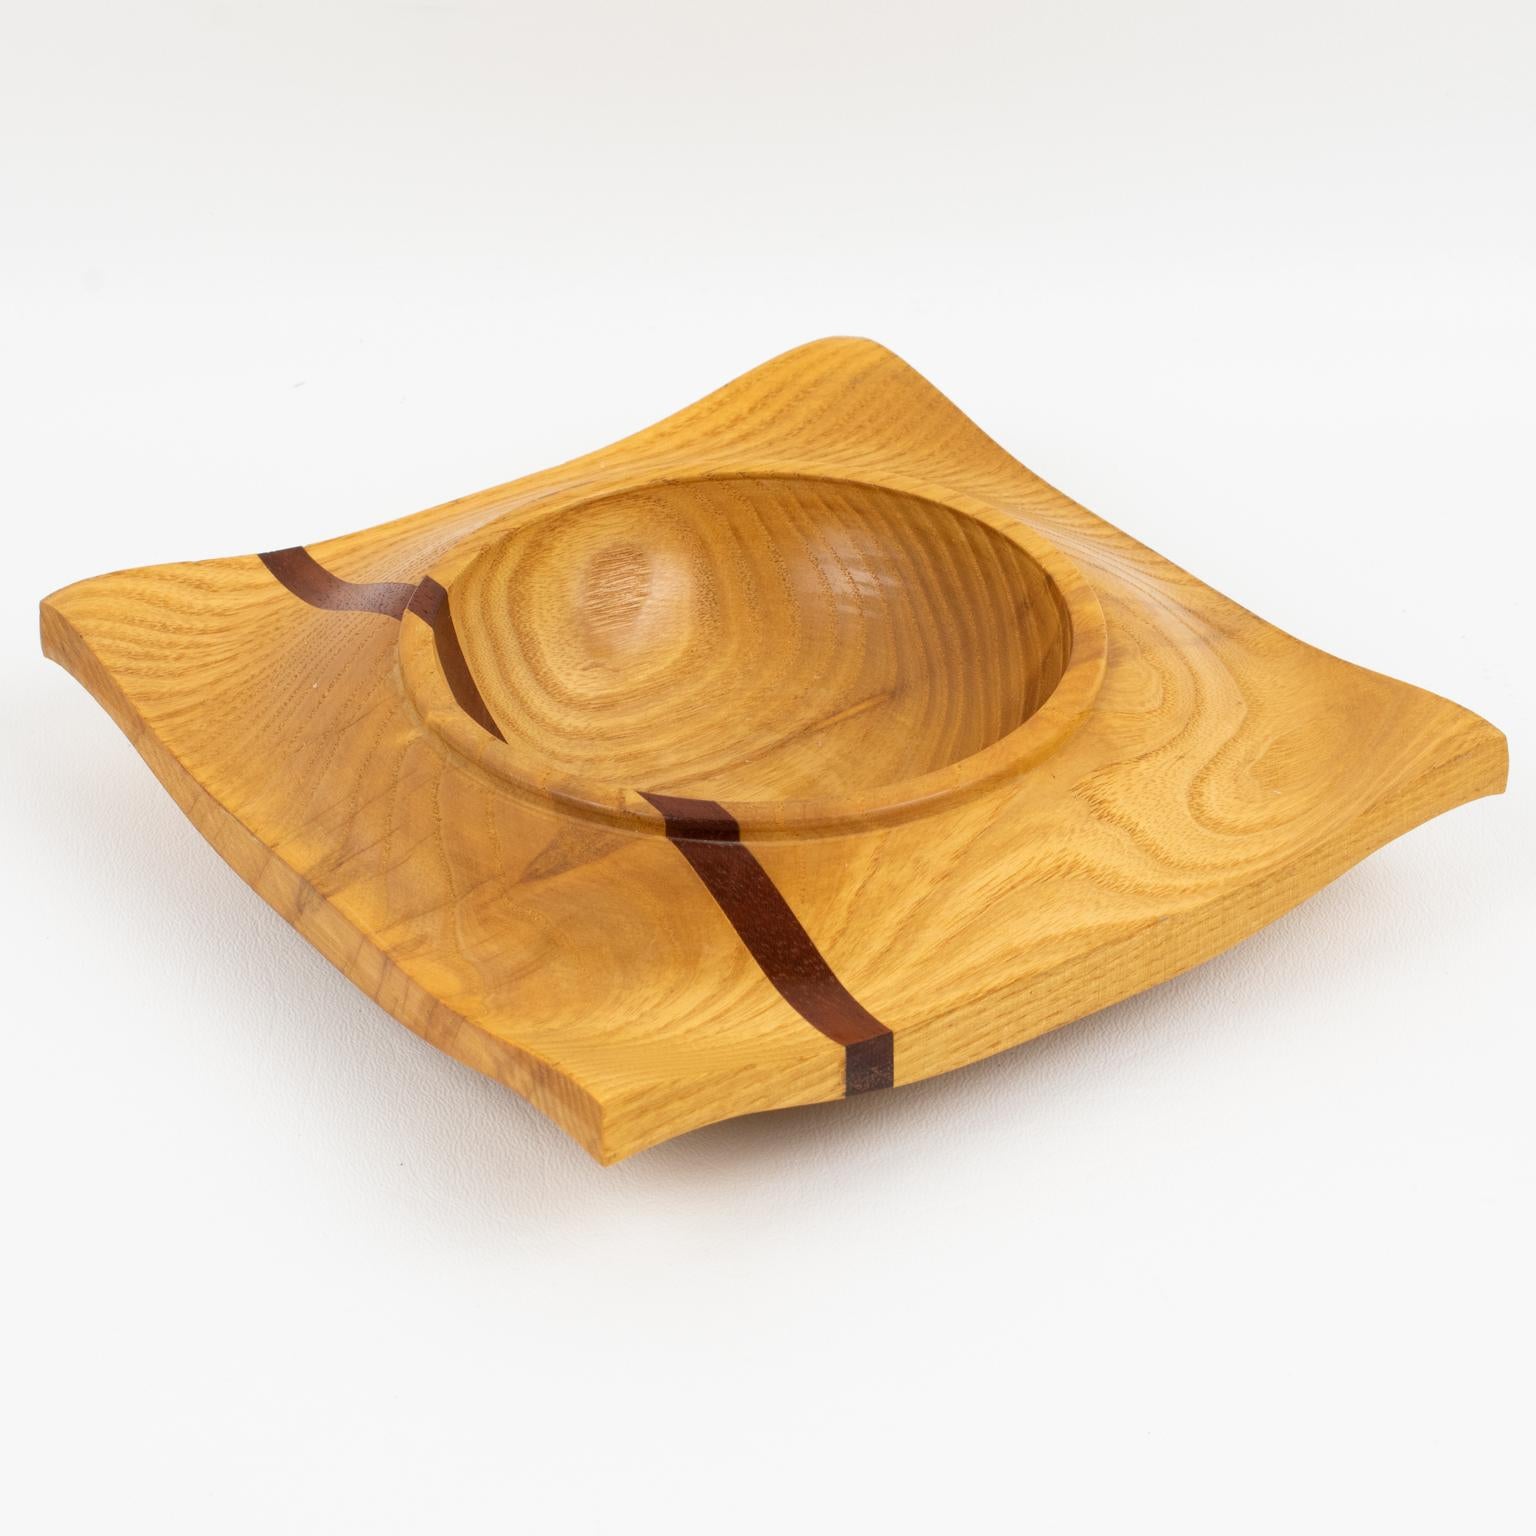 Cette exquise coupe danoise moderniste sculptée de l'âge de l'espace, fourre-tout ou accessoire de bureau, est ornée d'une belle marqueterie de bois. Ce vide poche a une forme géométrique ondulée avec un design typique de bateau spatial avec